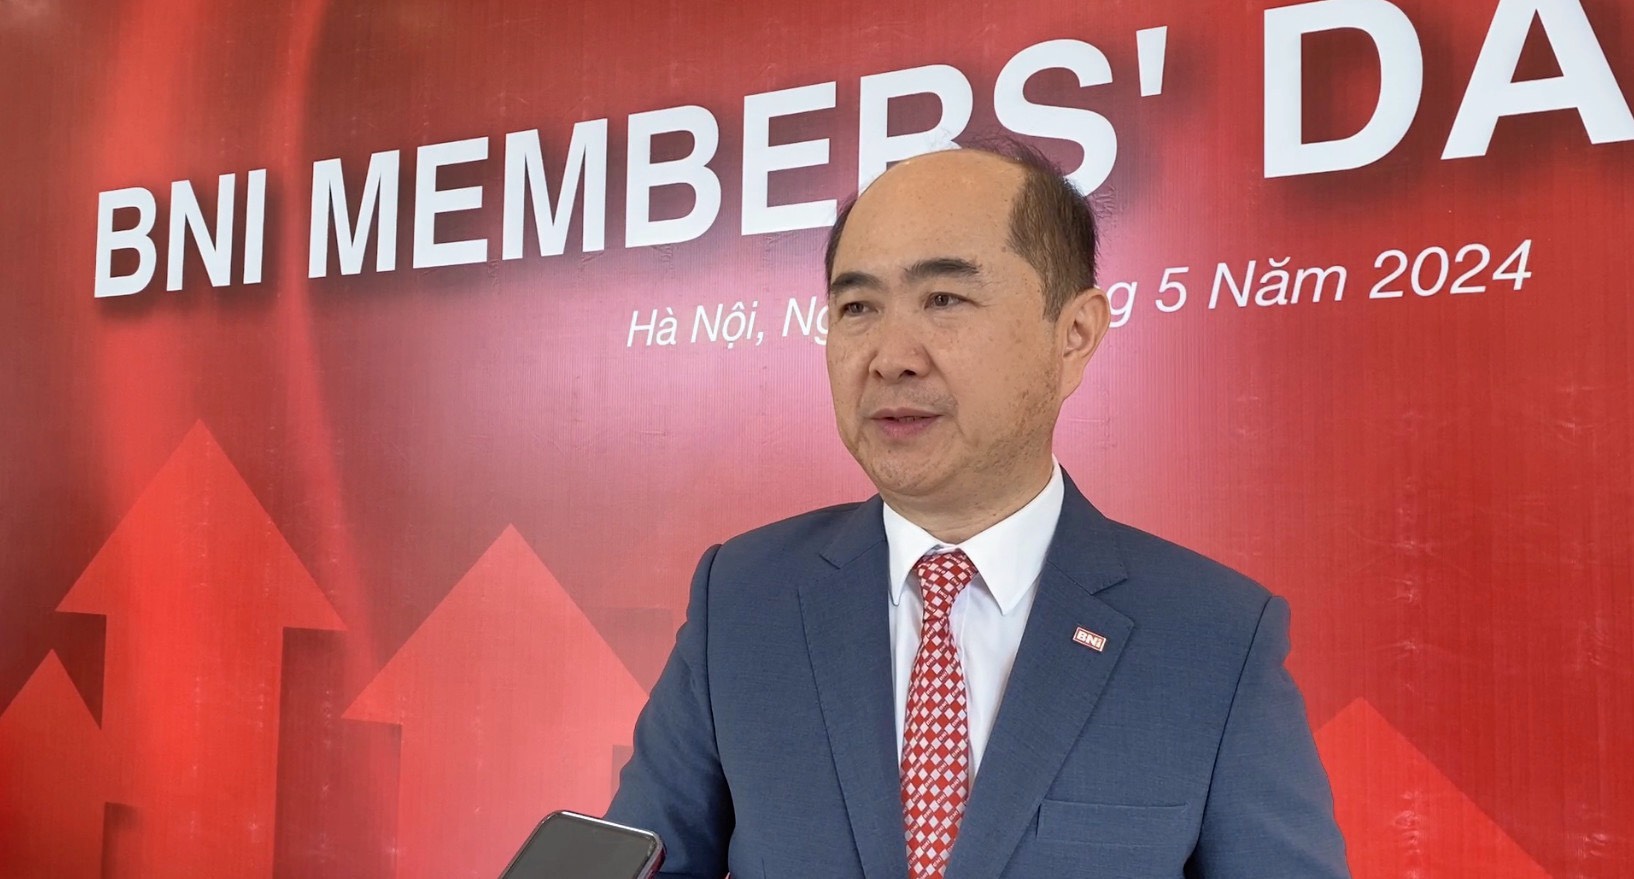 Ông Hồ Quang Minh – Chủ tịch BNI Việt Nam